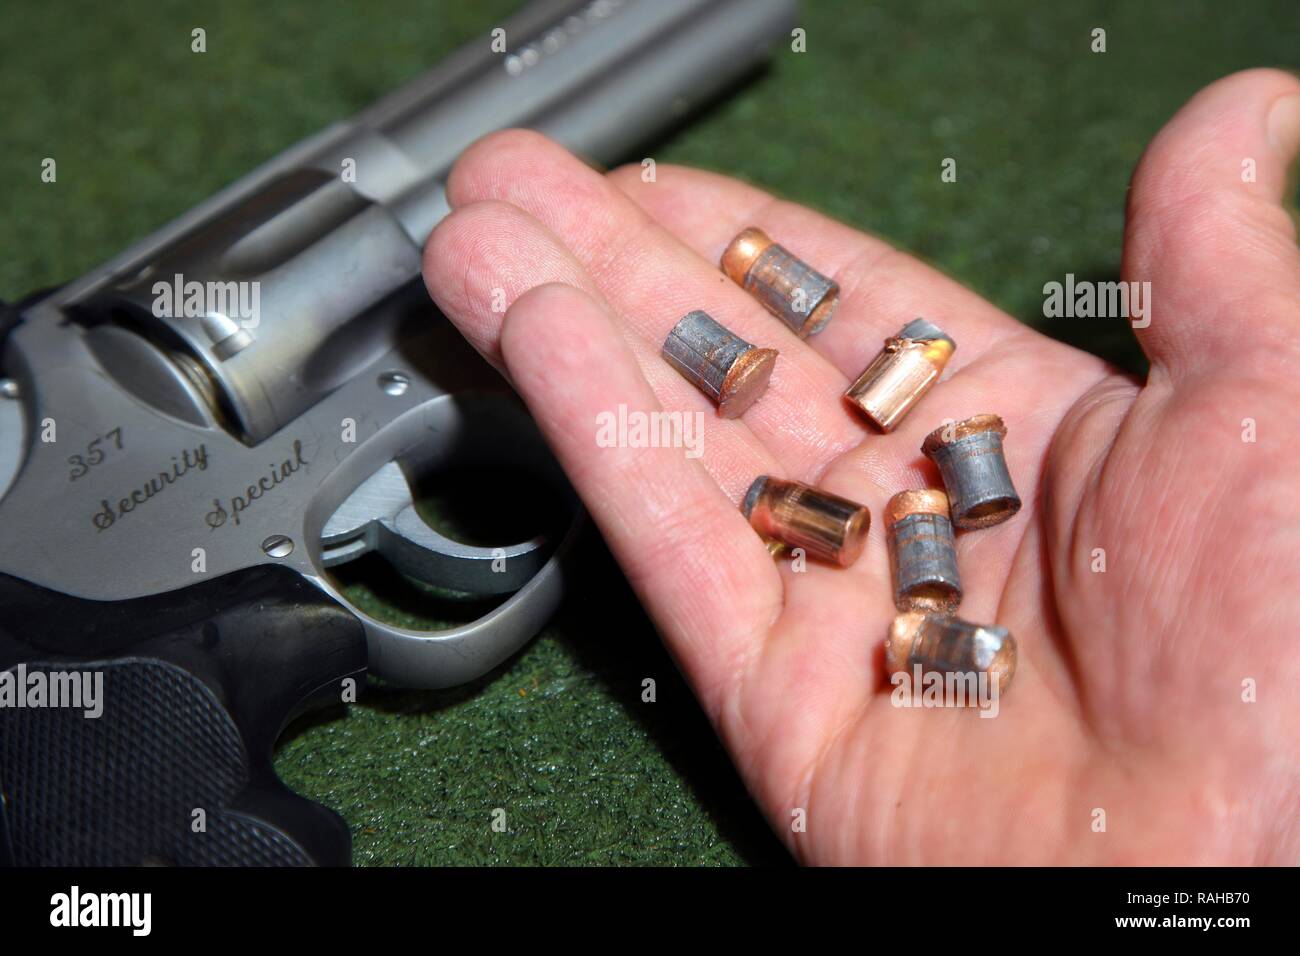 Los proyectiles de armas de fuego son más tarde en comparación con los proyectiles de una escena de crimen, del departamento de investigación criminal de la Foto de stock